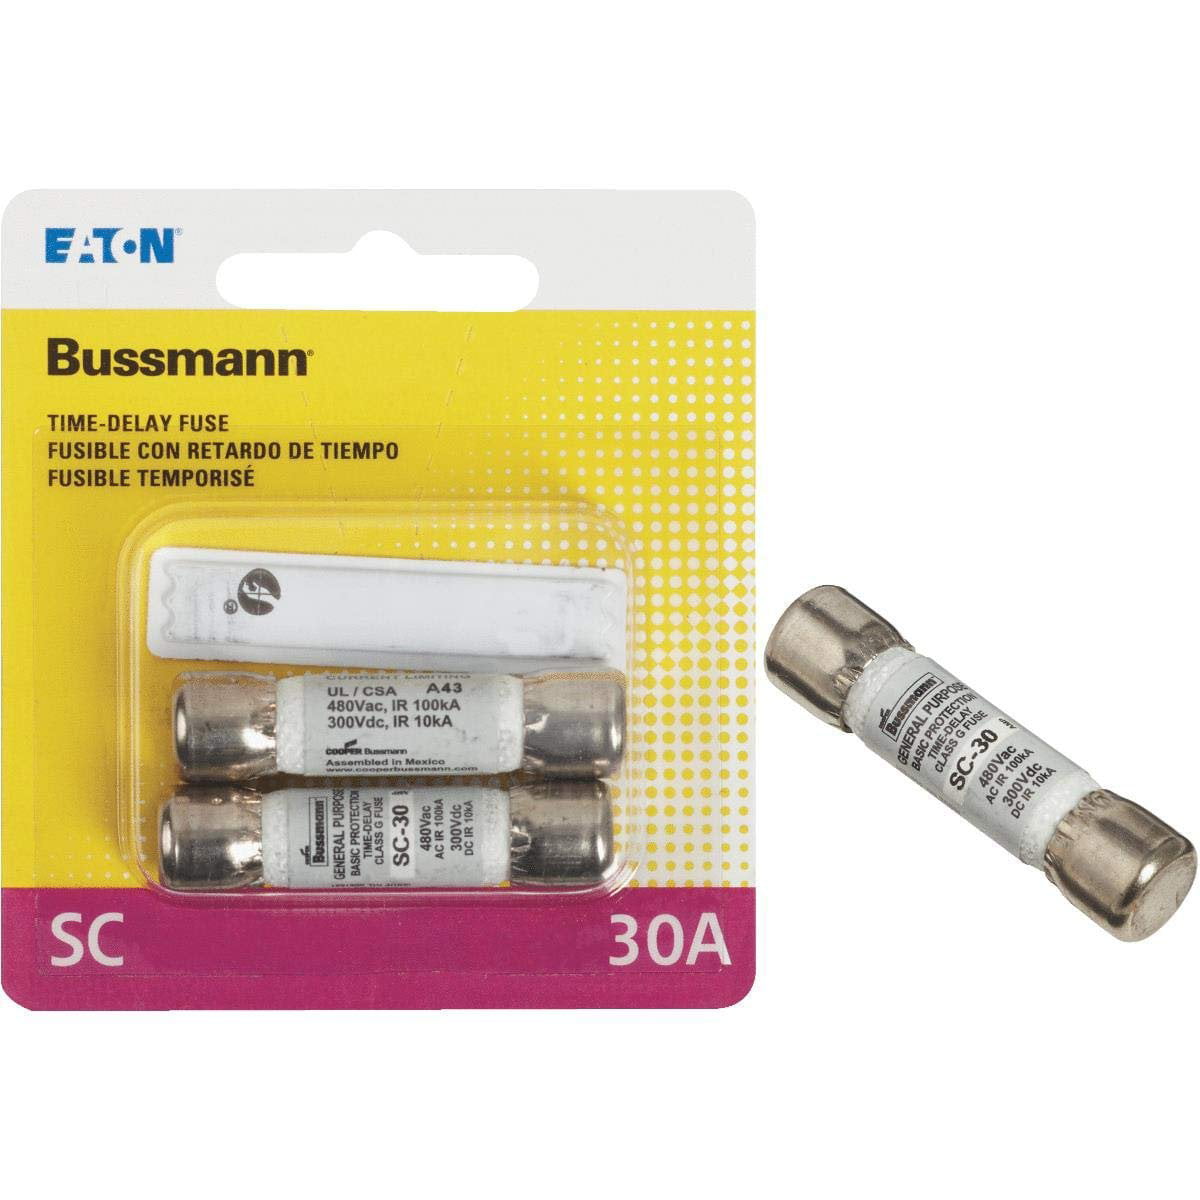 SC-1 Bussmann SC-1 1Amp Time-Delay Class Fuse G Melamine Tube 600V UL Listed. 